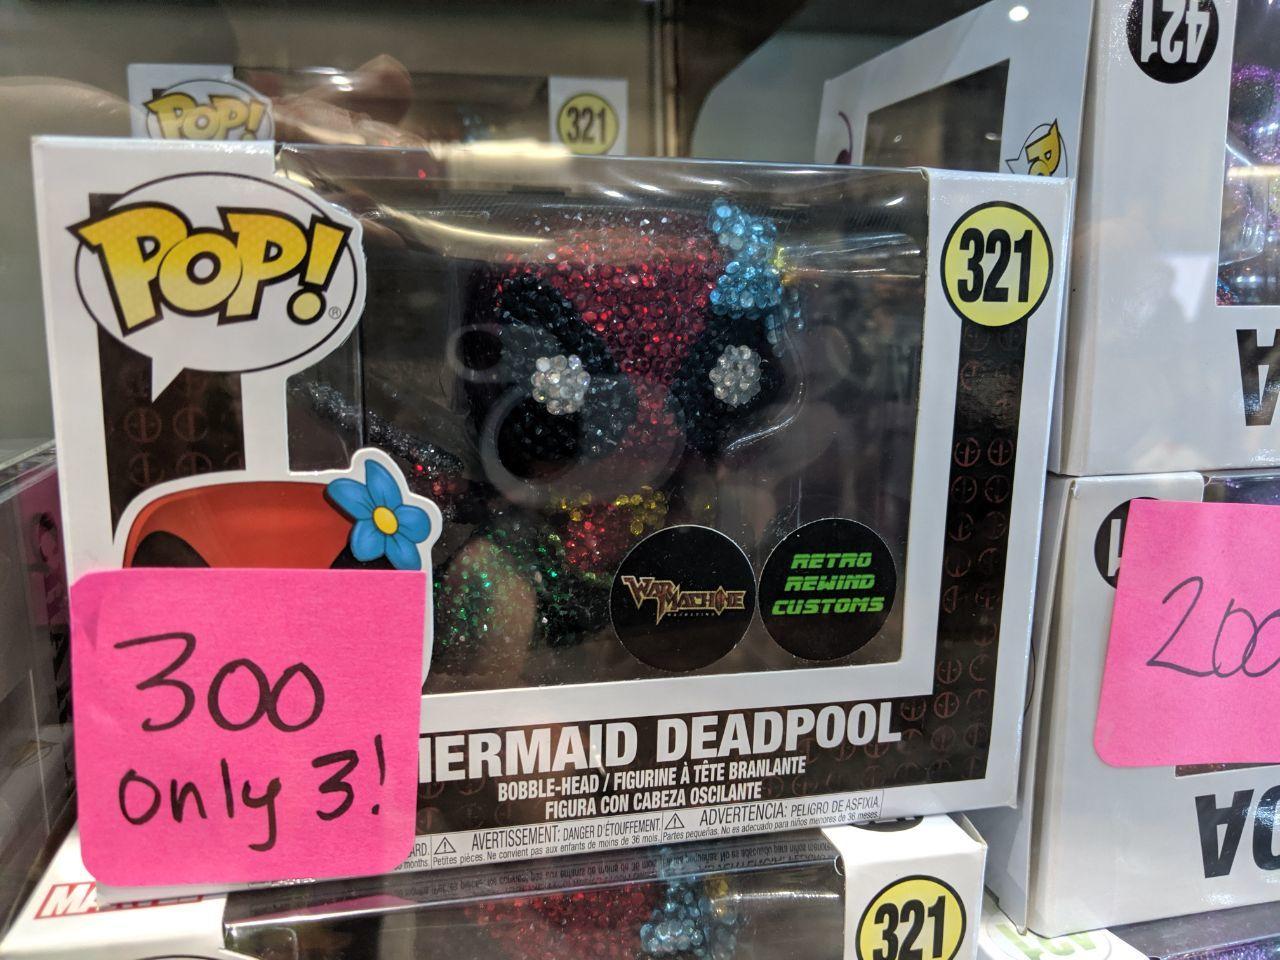 Mermaid Deadpool